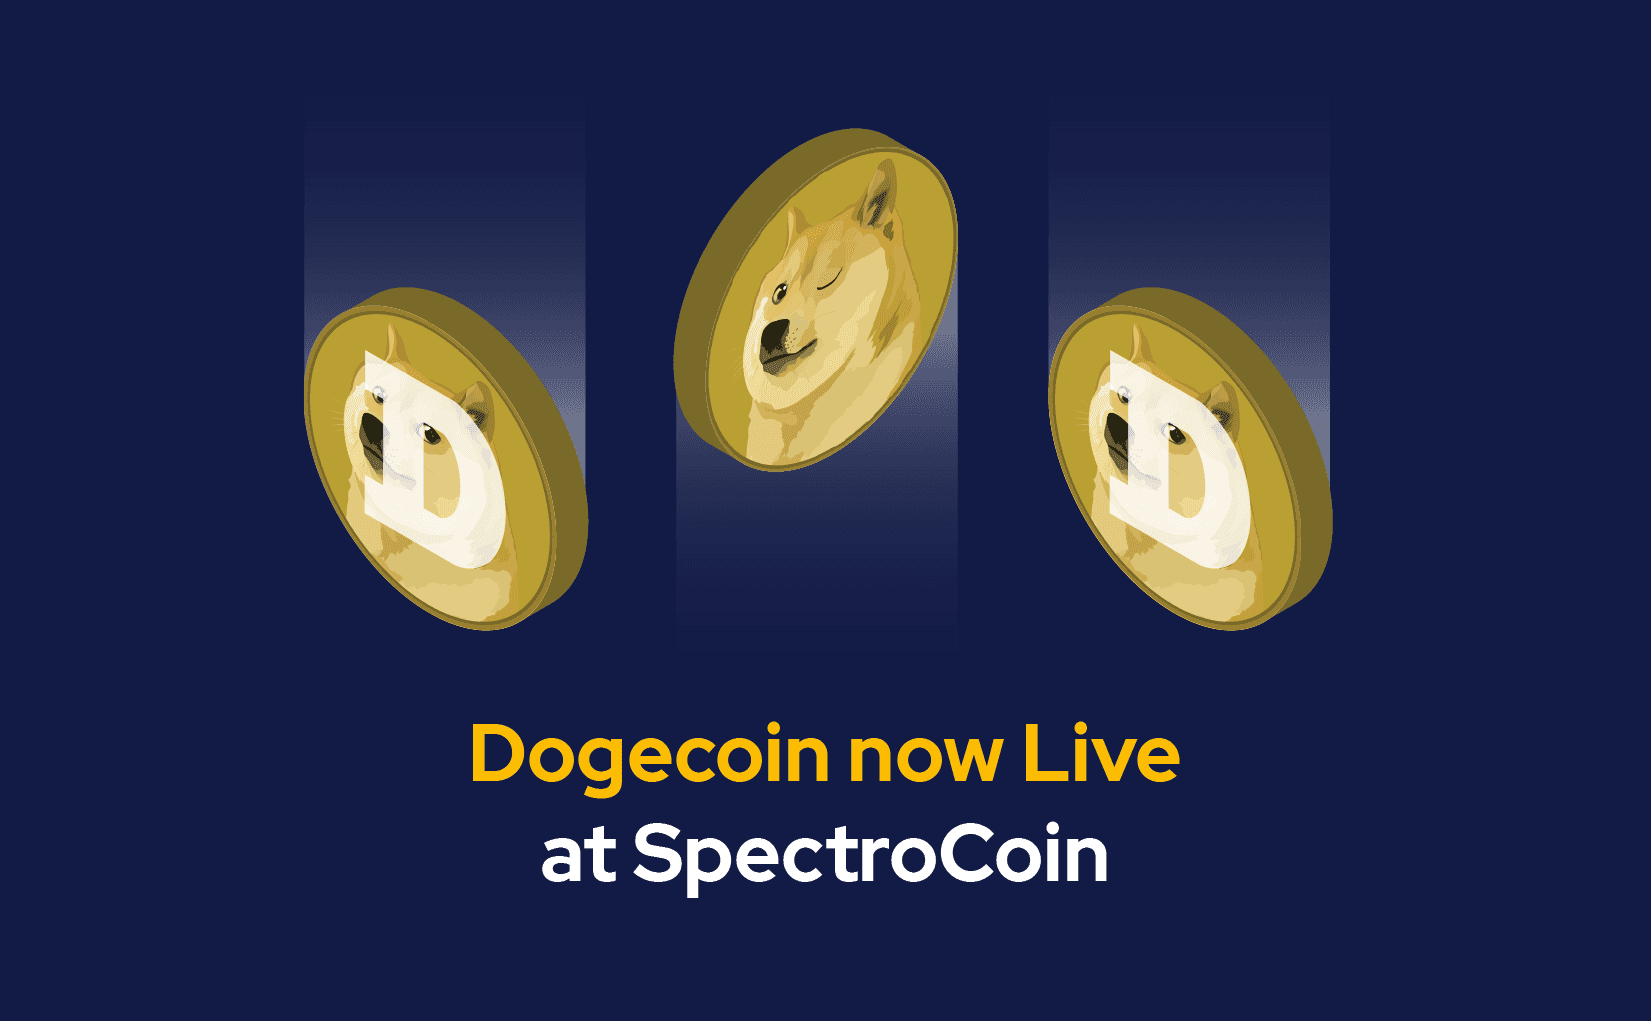 Dogecoin nüüd SpectroCoinis saadaval